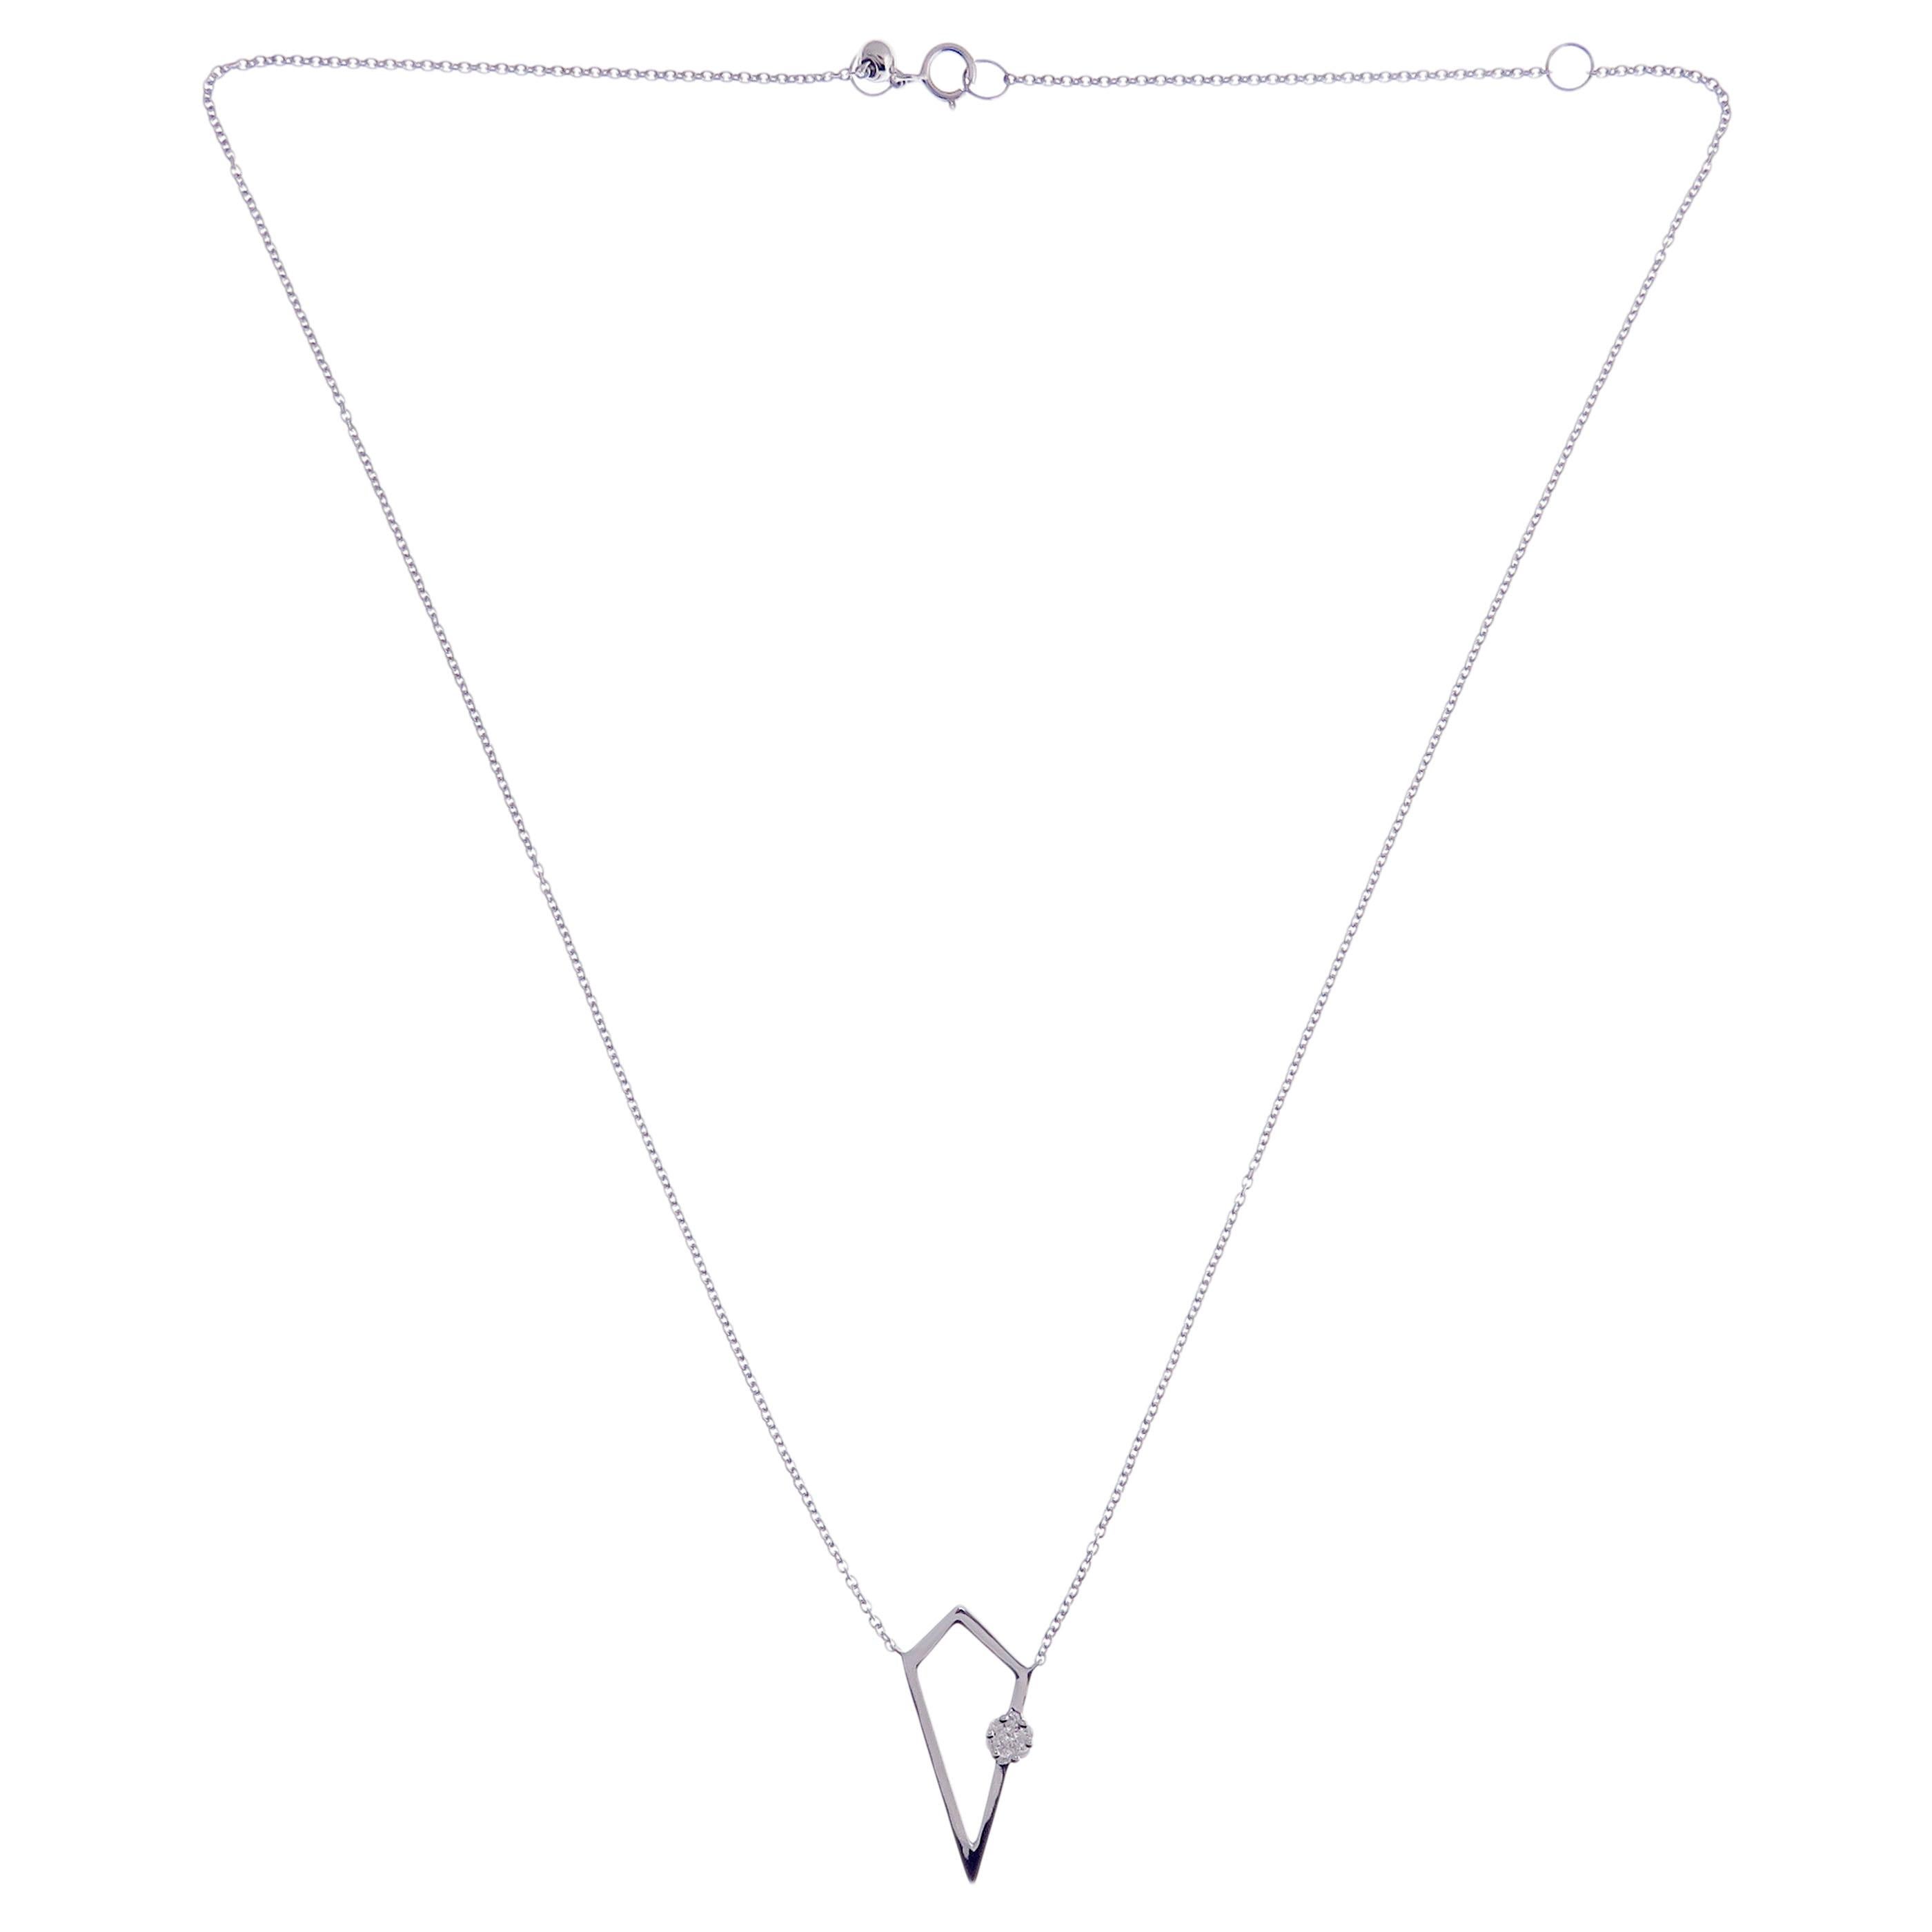 Diese abstrakte Halskette aus 18-karätigem Weißgold wiegt etwa 0,10 Karat weißer Diamanten in SI-H-Qualität. 

Halskette ist 16